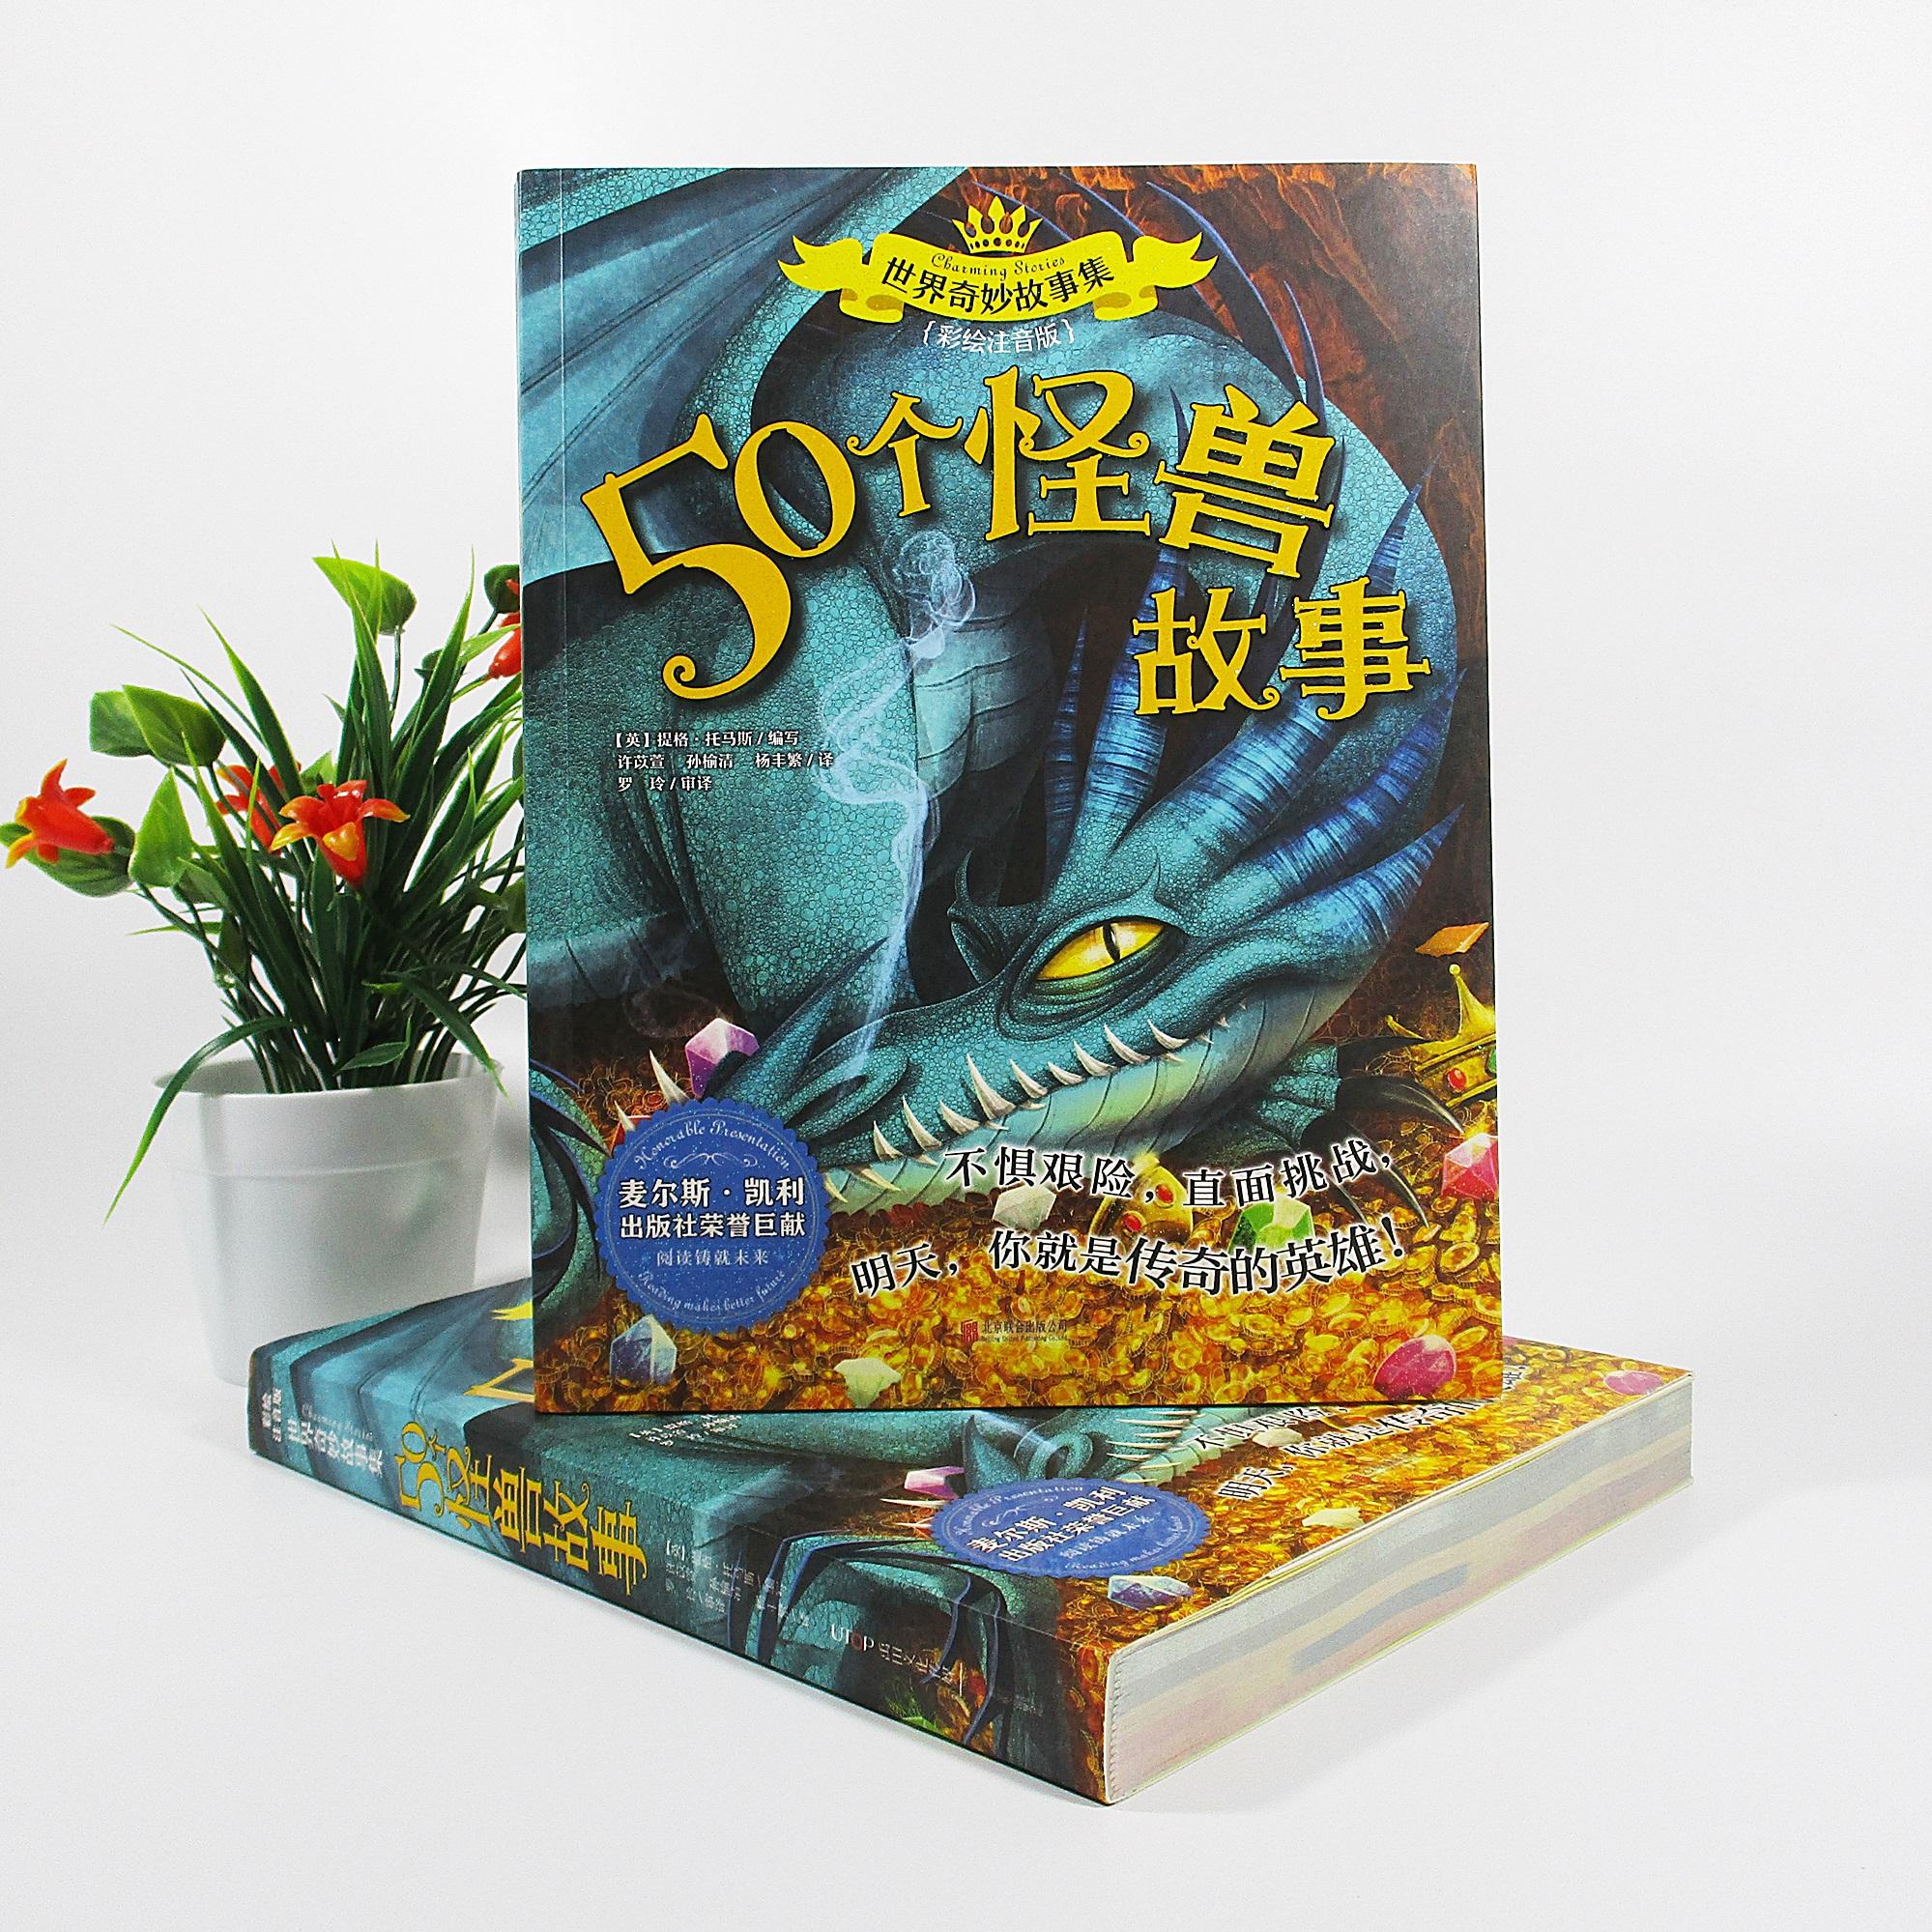 Xiaopingbook หนังสือนิทานภาษาจีน เรื่องรวมตำนานปิศาจ 《50 个怪兽故事》